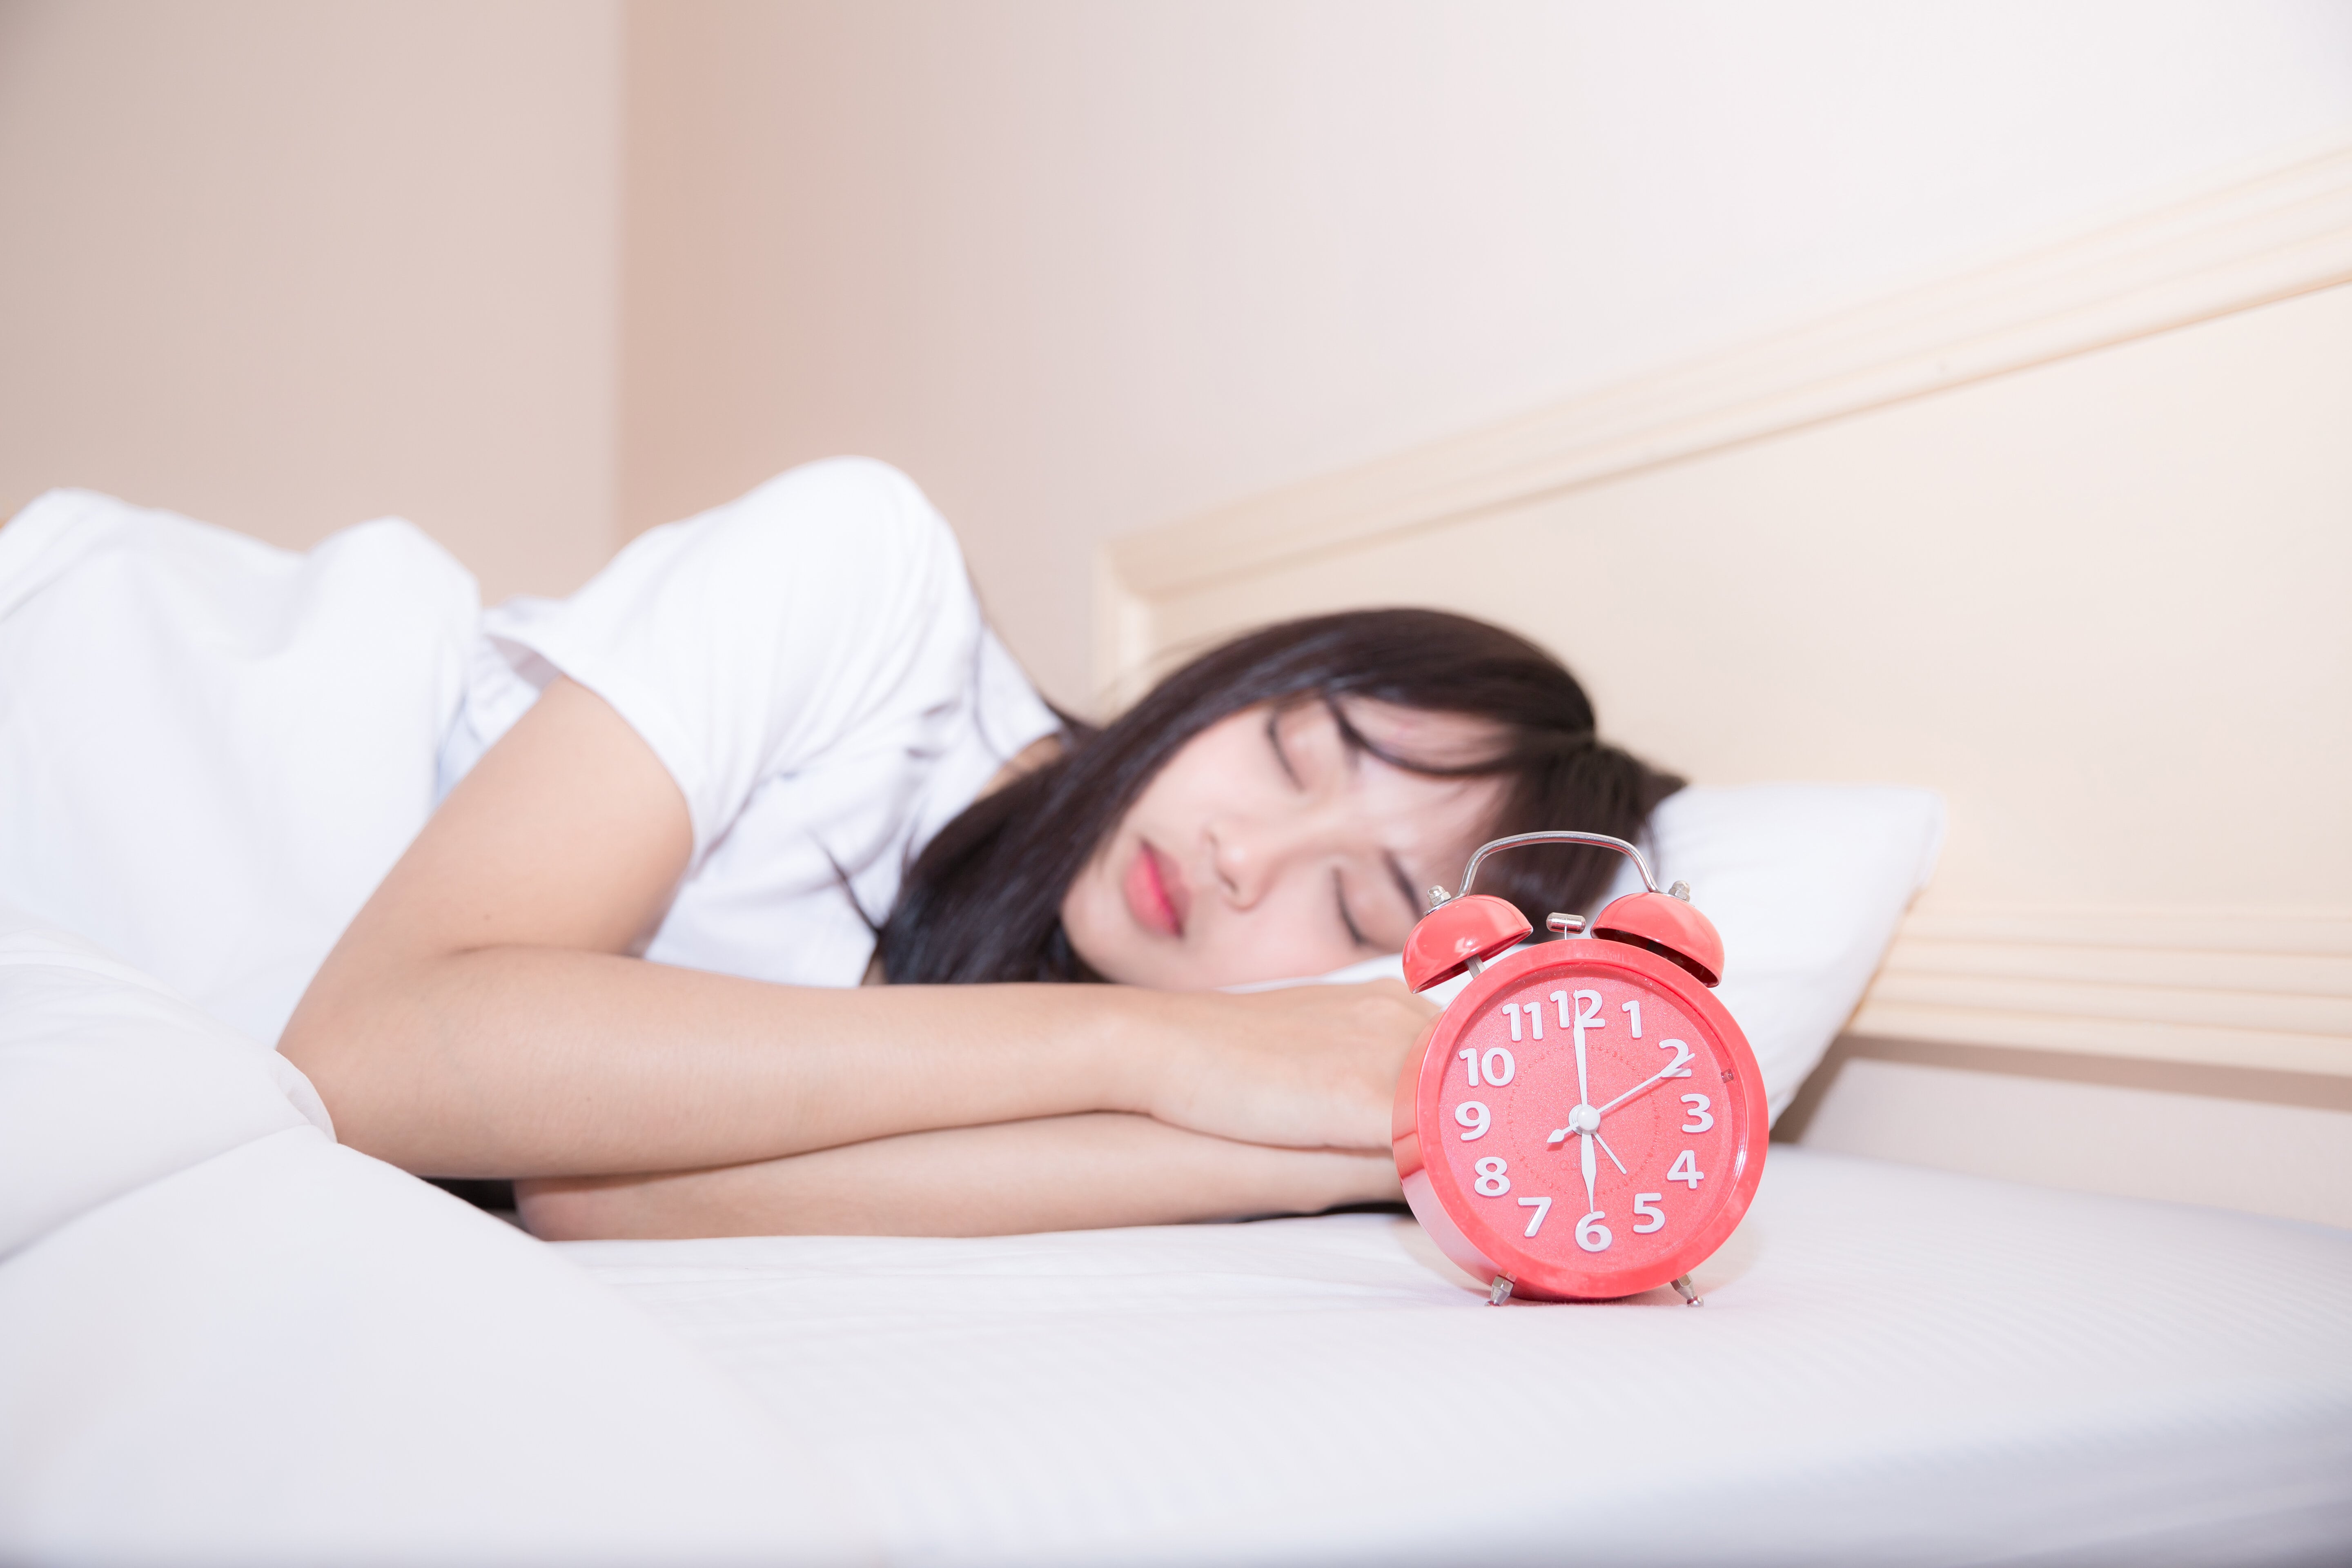 Những giải pháp tuyệt vời cho giấc ngủ của bạn